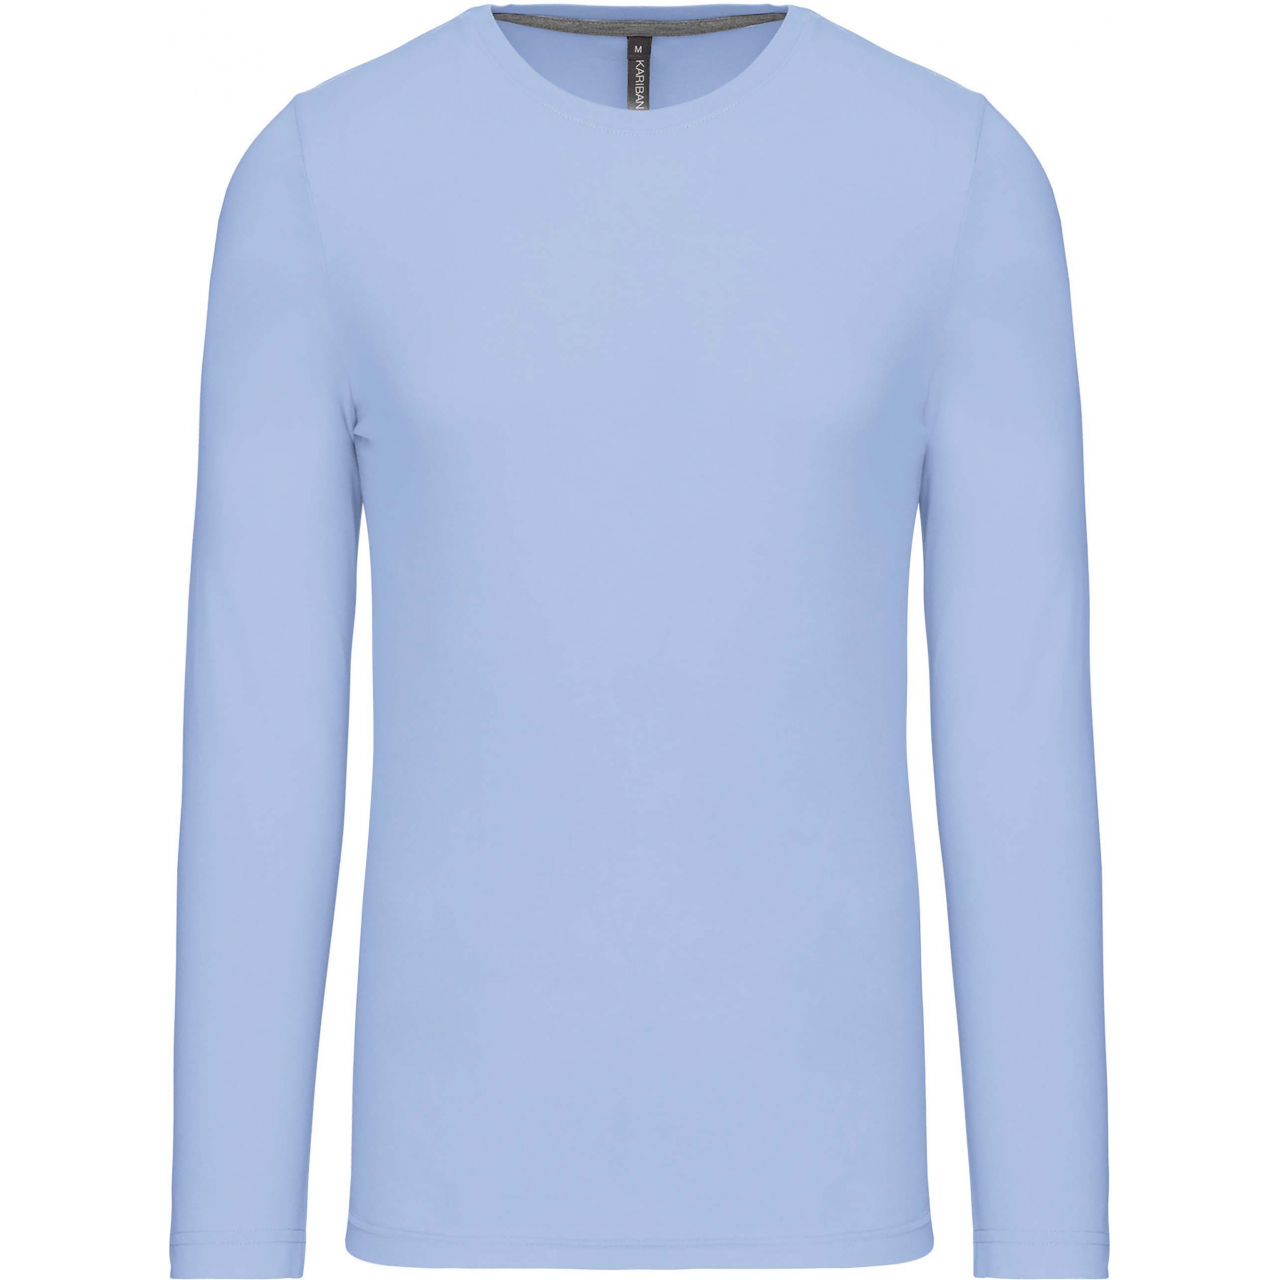 Pánské tričko Kariban dlouhý rukáv - světle modré, XL